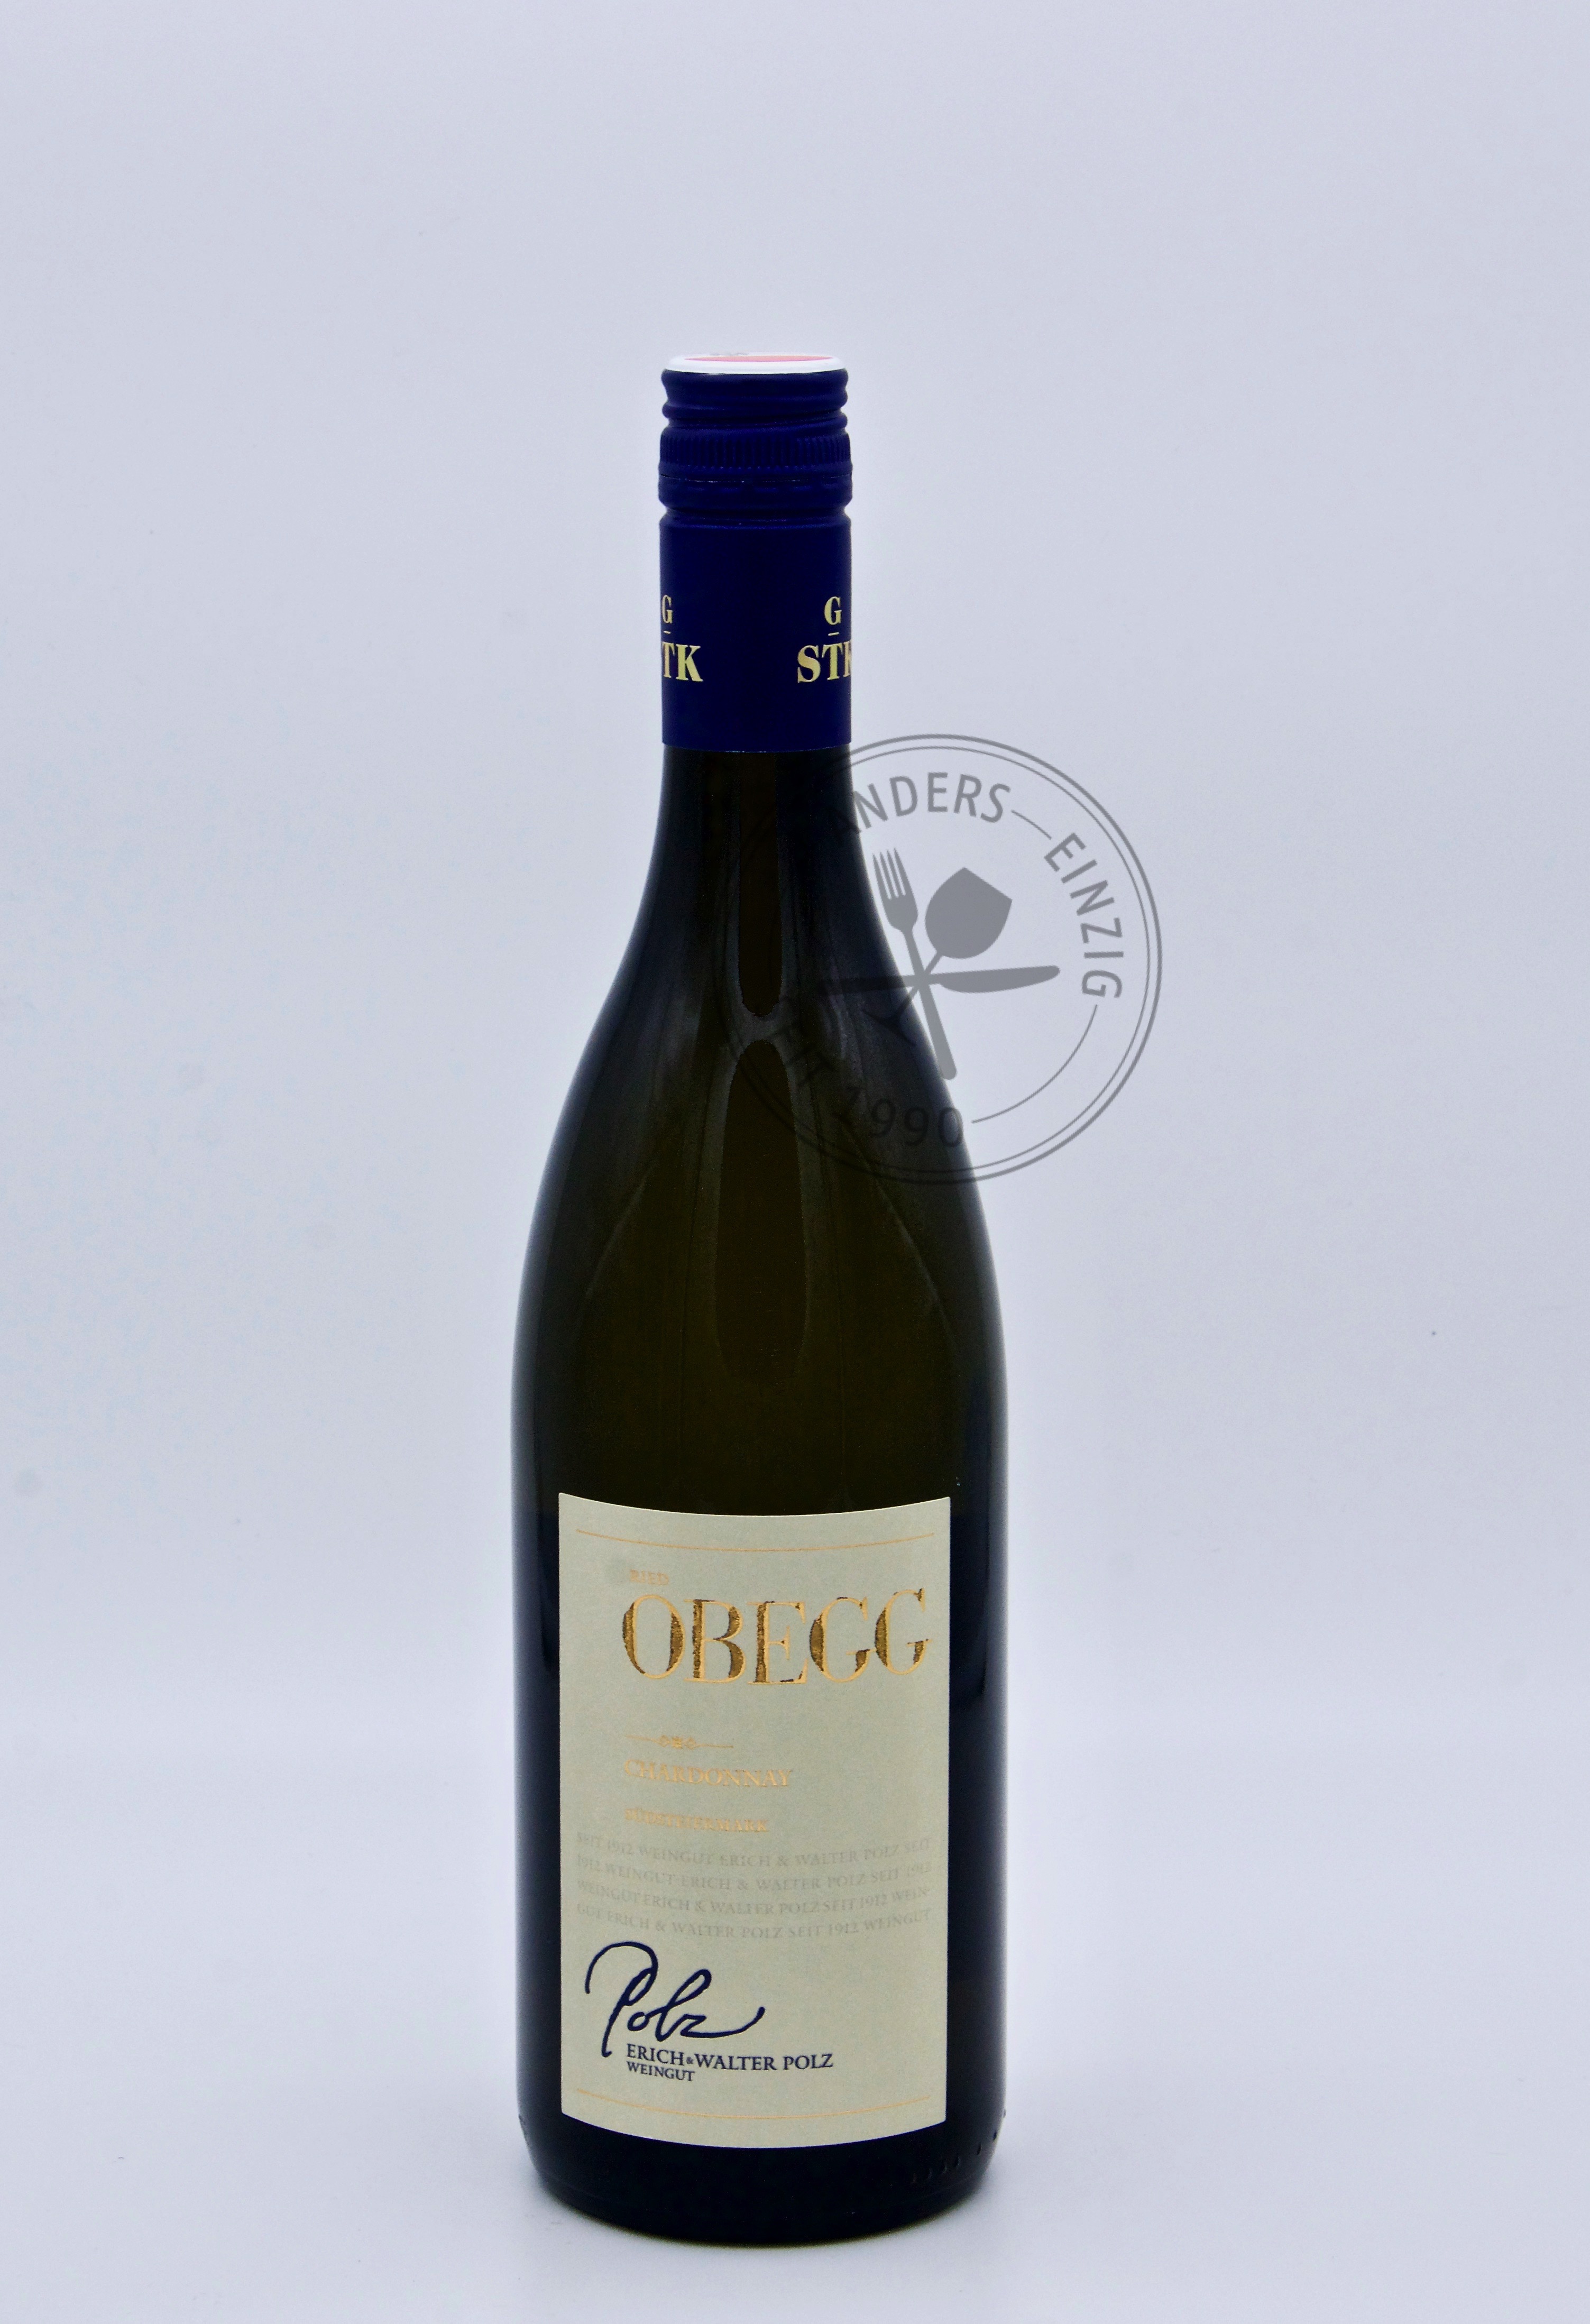 Chardonnay Obegg 2017